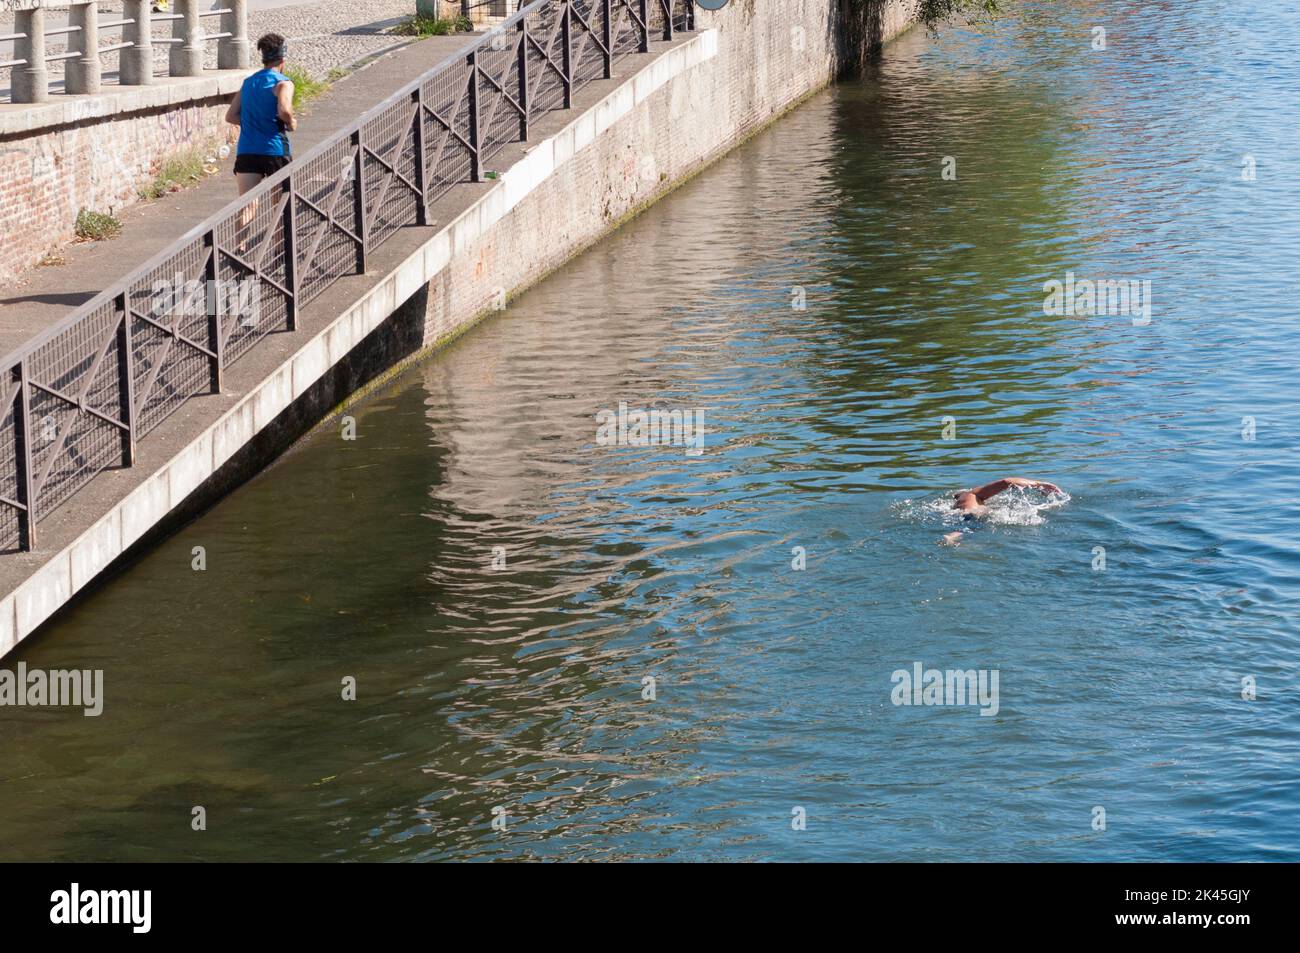 Italy, Lombardy, Milan, Naviglio Grande Canal, Grand Fondo Del Naviglio, Swimming Race Stock Photo